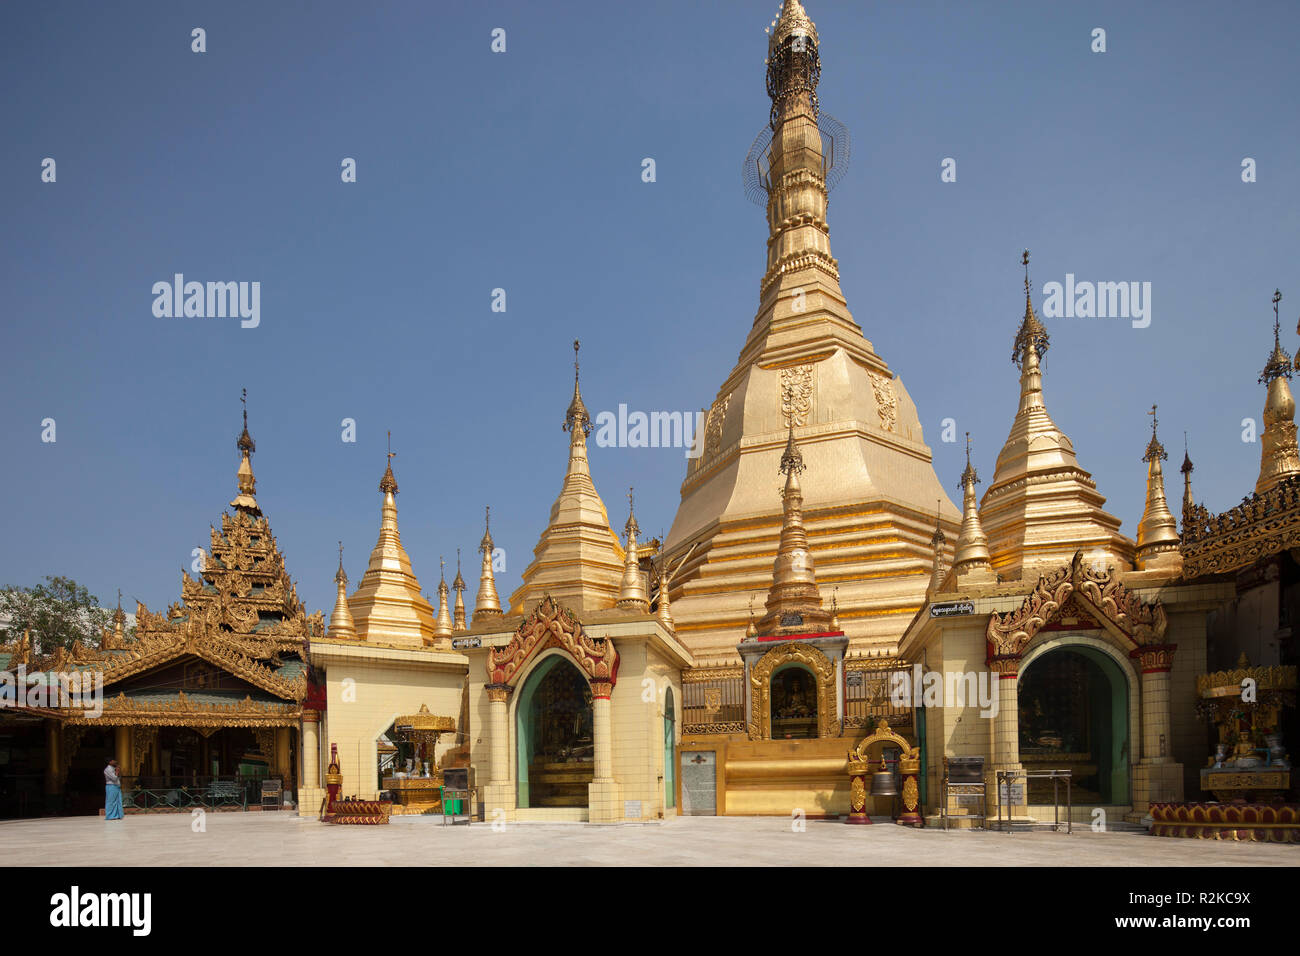 Sule pagoda, Yangon, Myanmar, Asia Stock Photo